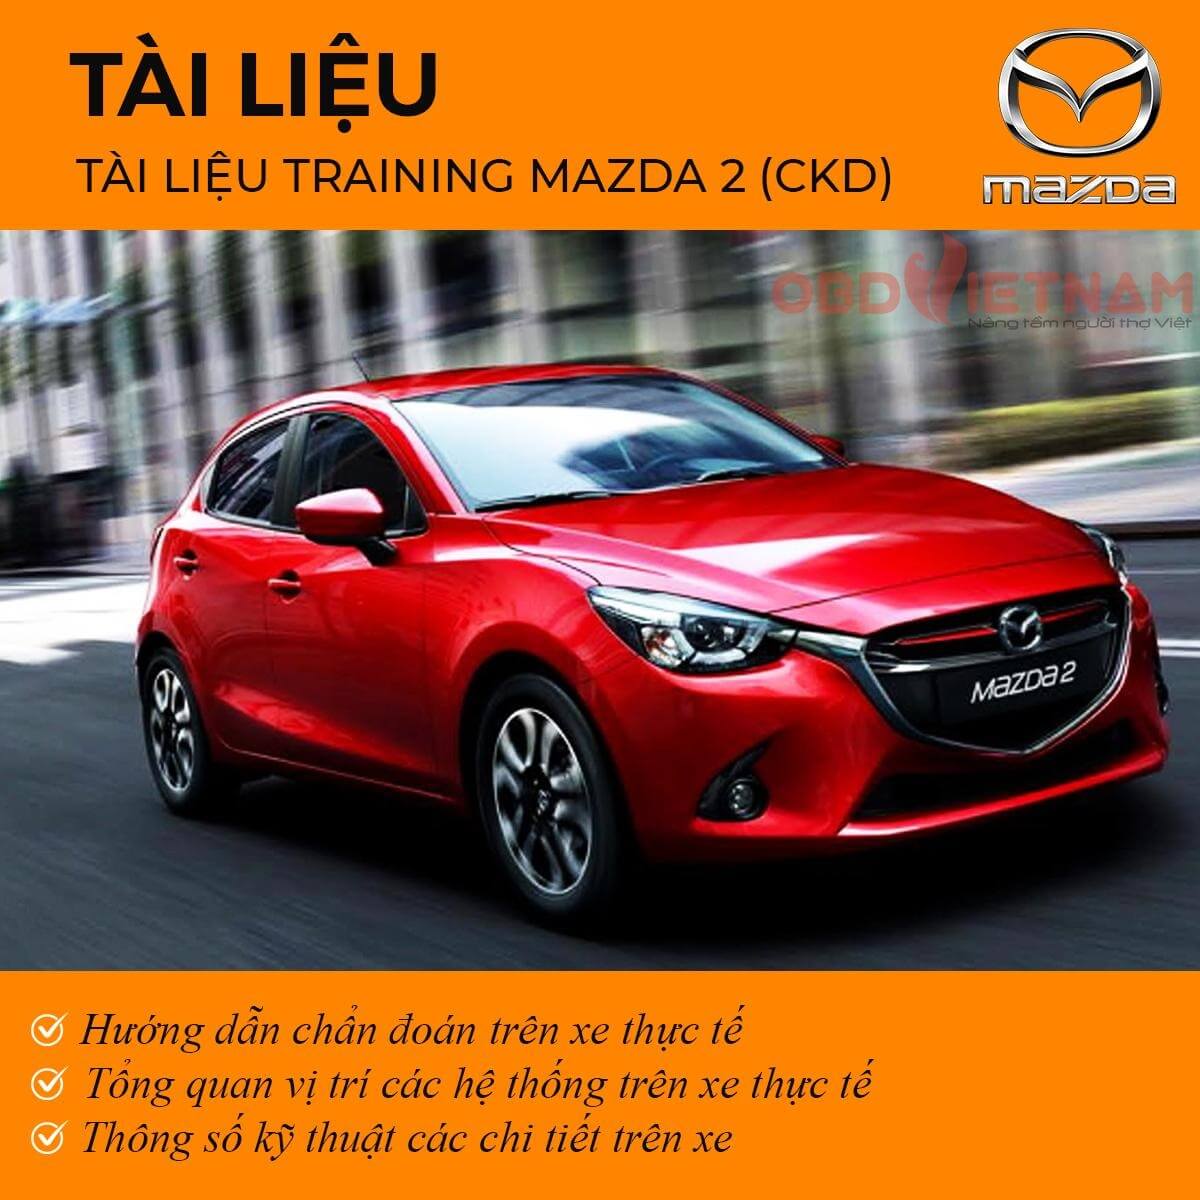 Tài liệu training Mazda 2